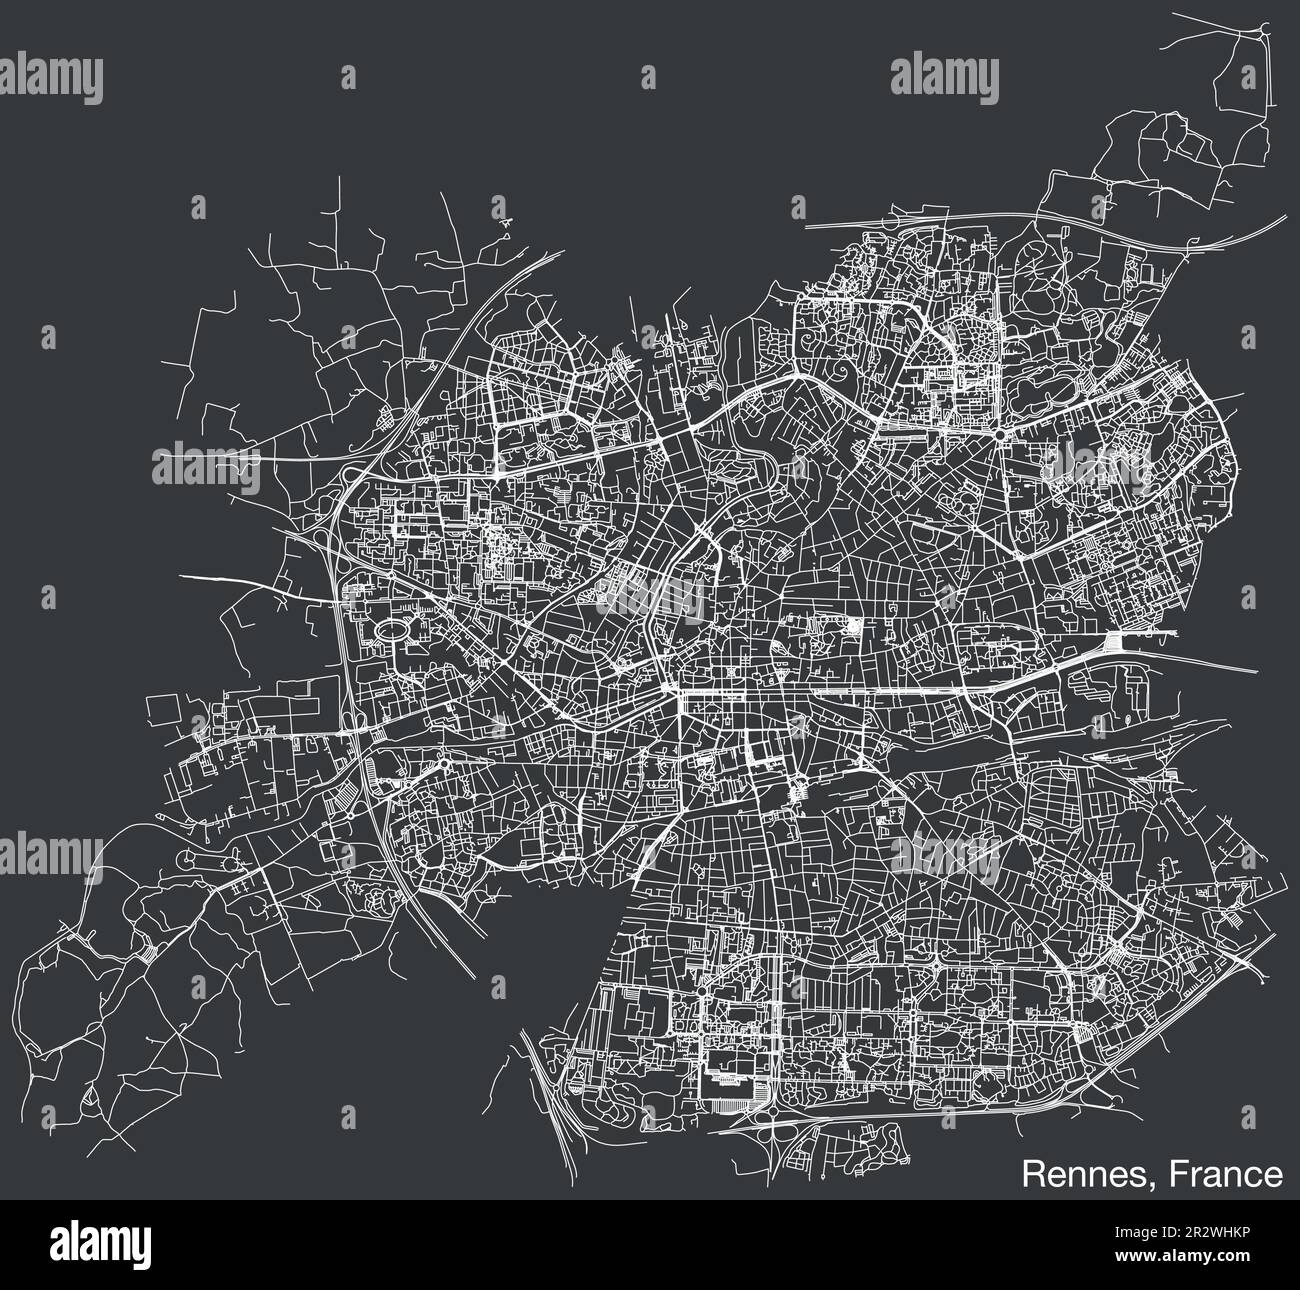 Detaillierte handgezeichnete Straßenkarte der französischen Stadt RENNES, FRANKREICH, mit soliden Straßenlinien und Namensschild auf altem Hintergrund Stock Vektor